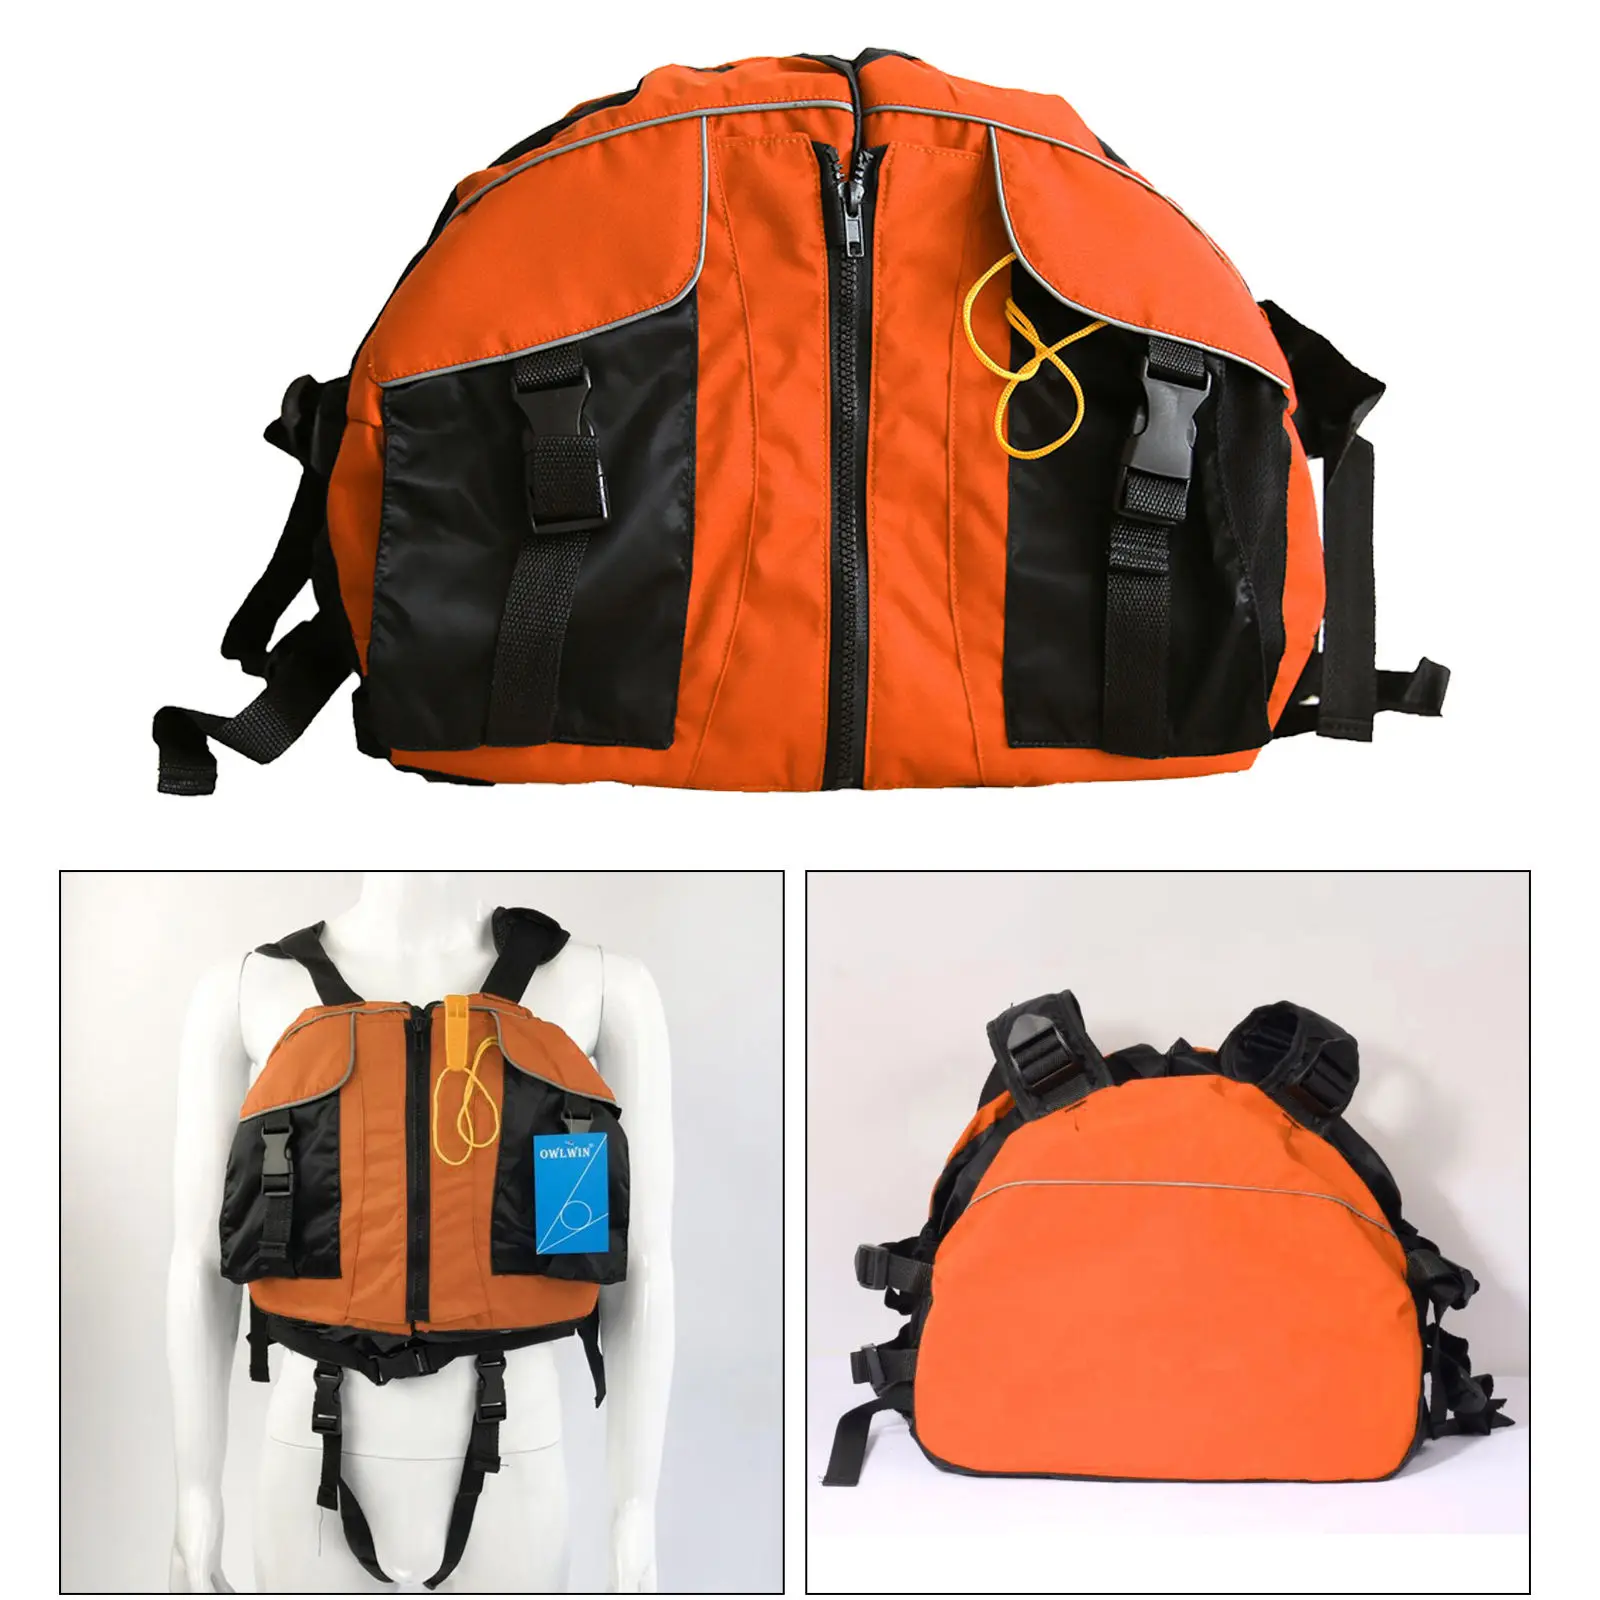 Breathable Foam Life Jacket Life Vest Securing Personal Floatation Device Personal Floatation Device Kayak Boating Equipments